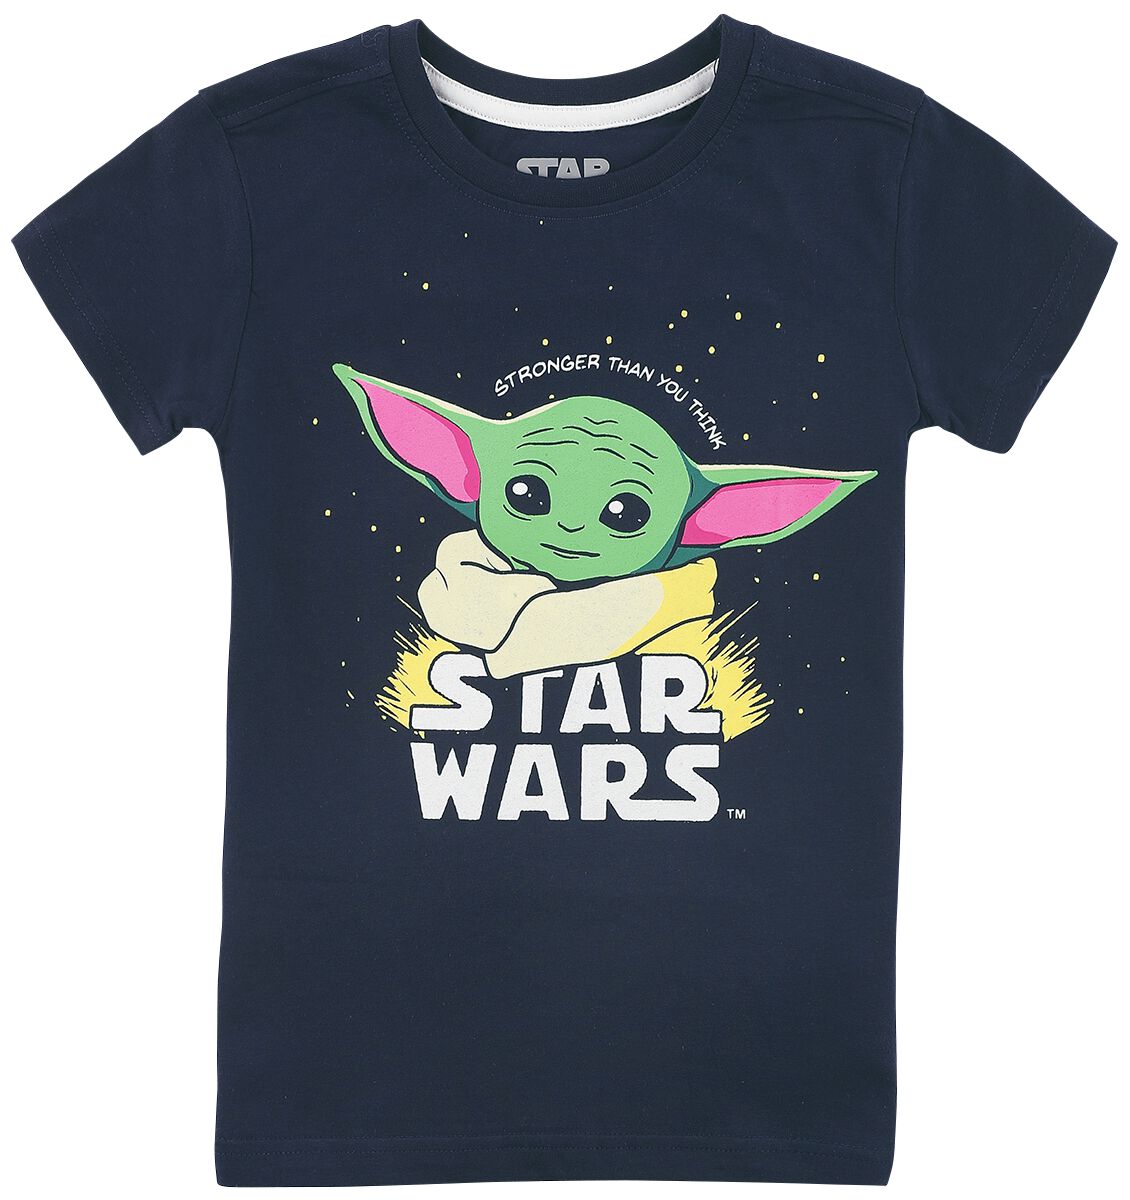 Star Wars T-Shirt für Kinder - Kids - The Mandalorian - Baby Yoda - Grogu - für Mädchen & Jungen - dunkelblau  - EMP exklusives Merchandise! von Star Wars